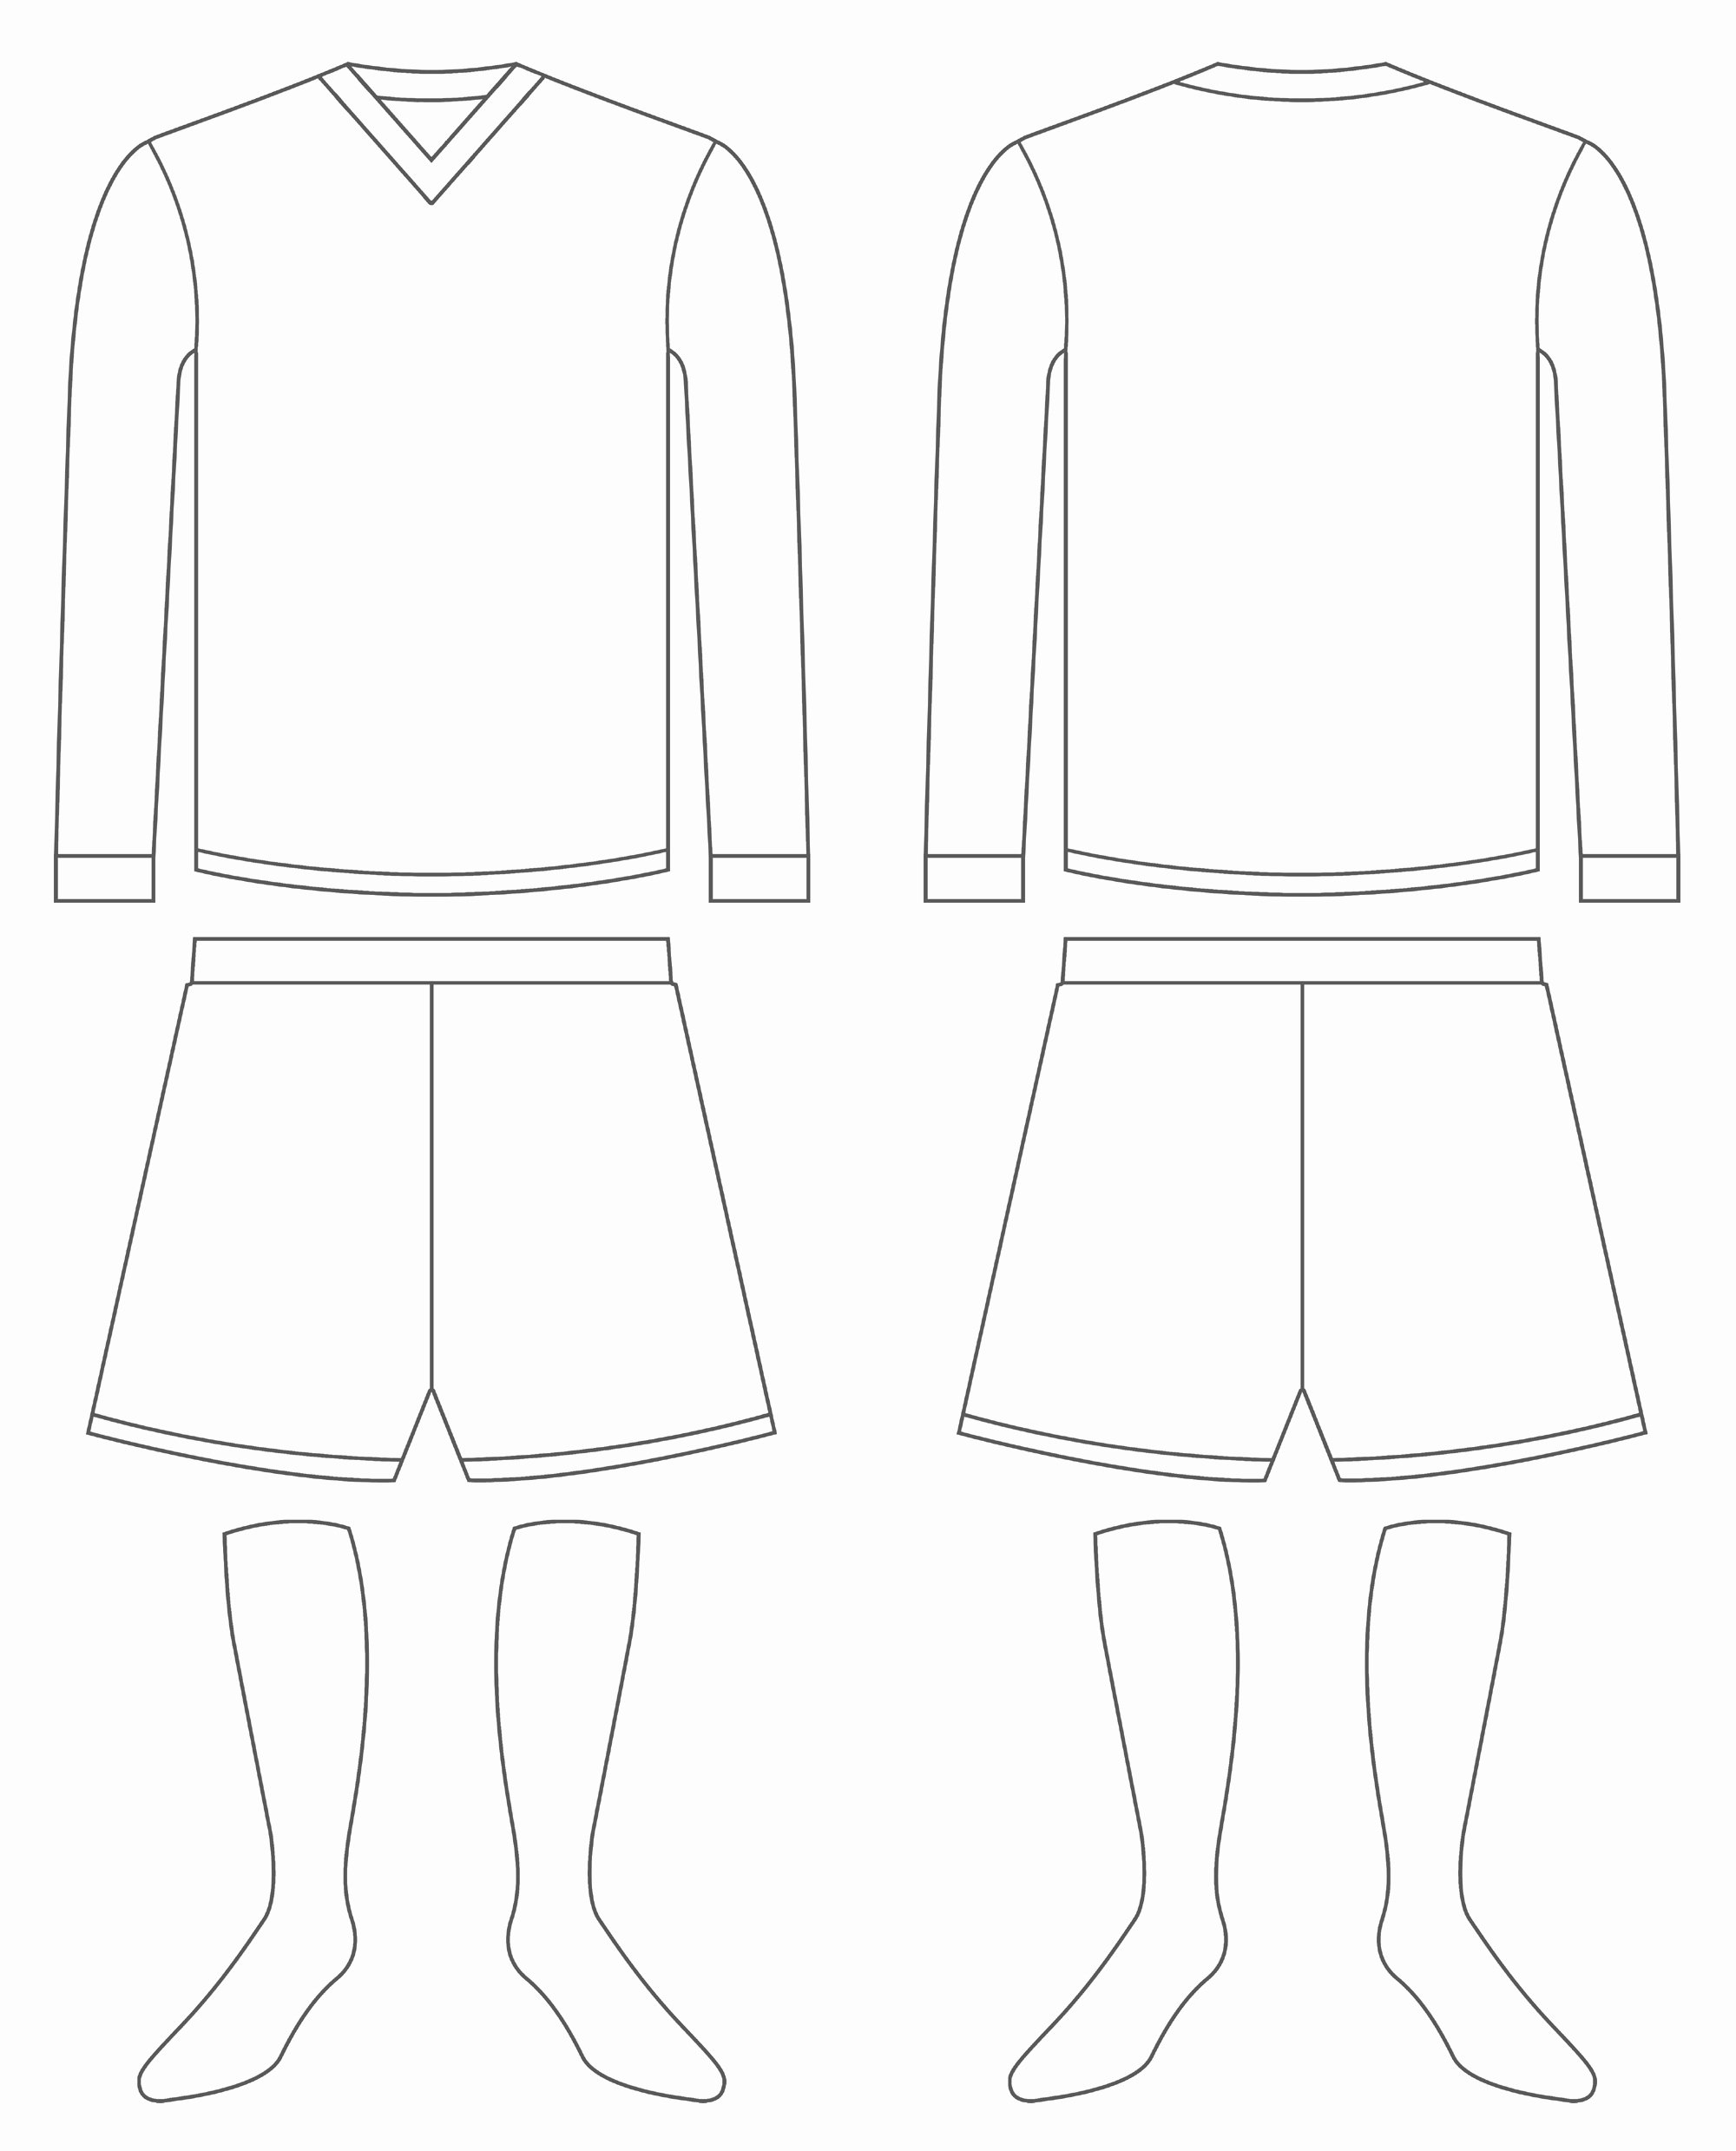 Baseball Uniform order form Template Lovely 13 Blank Baseball Jersey Vector Baseball Jersey